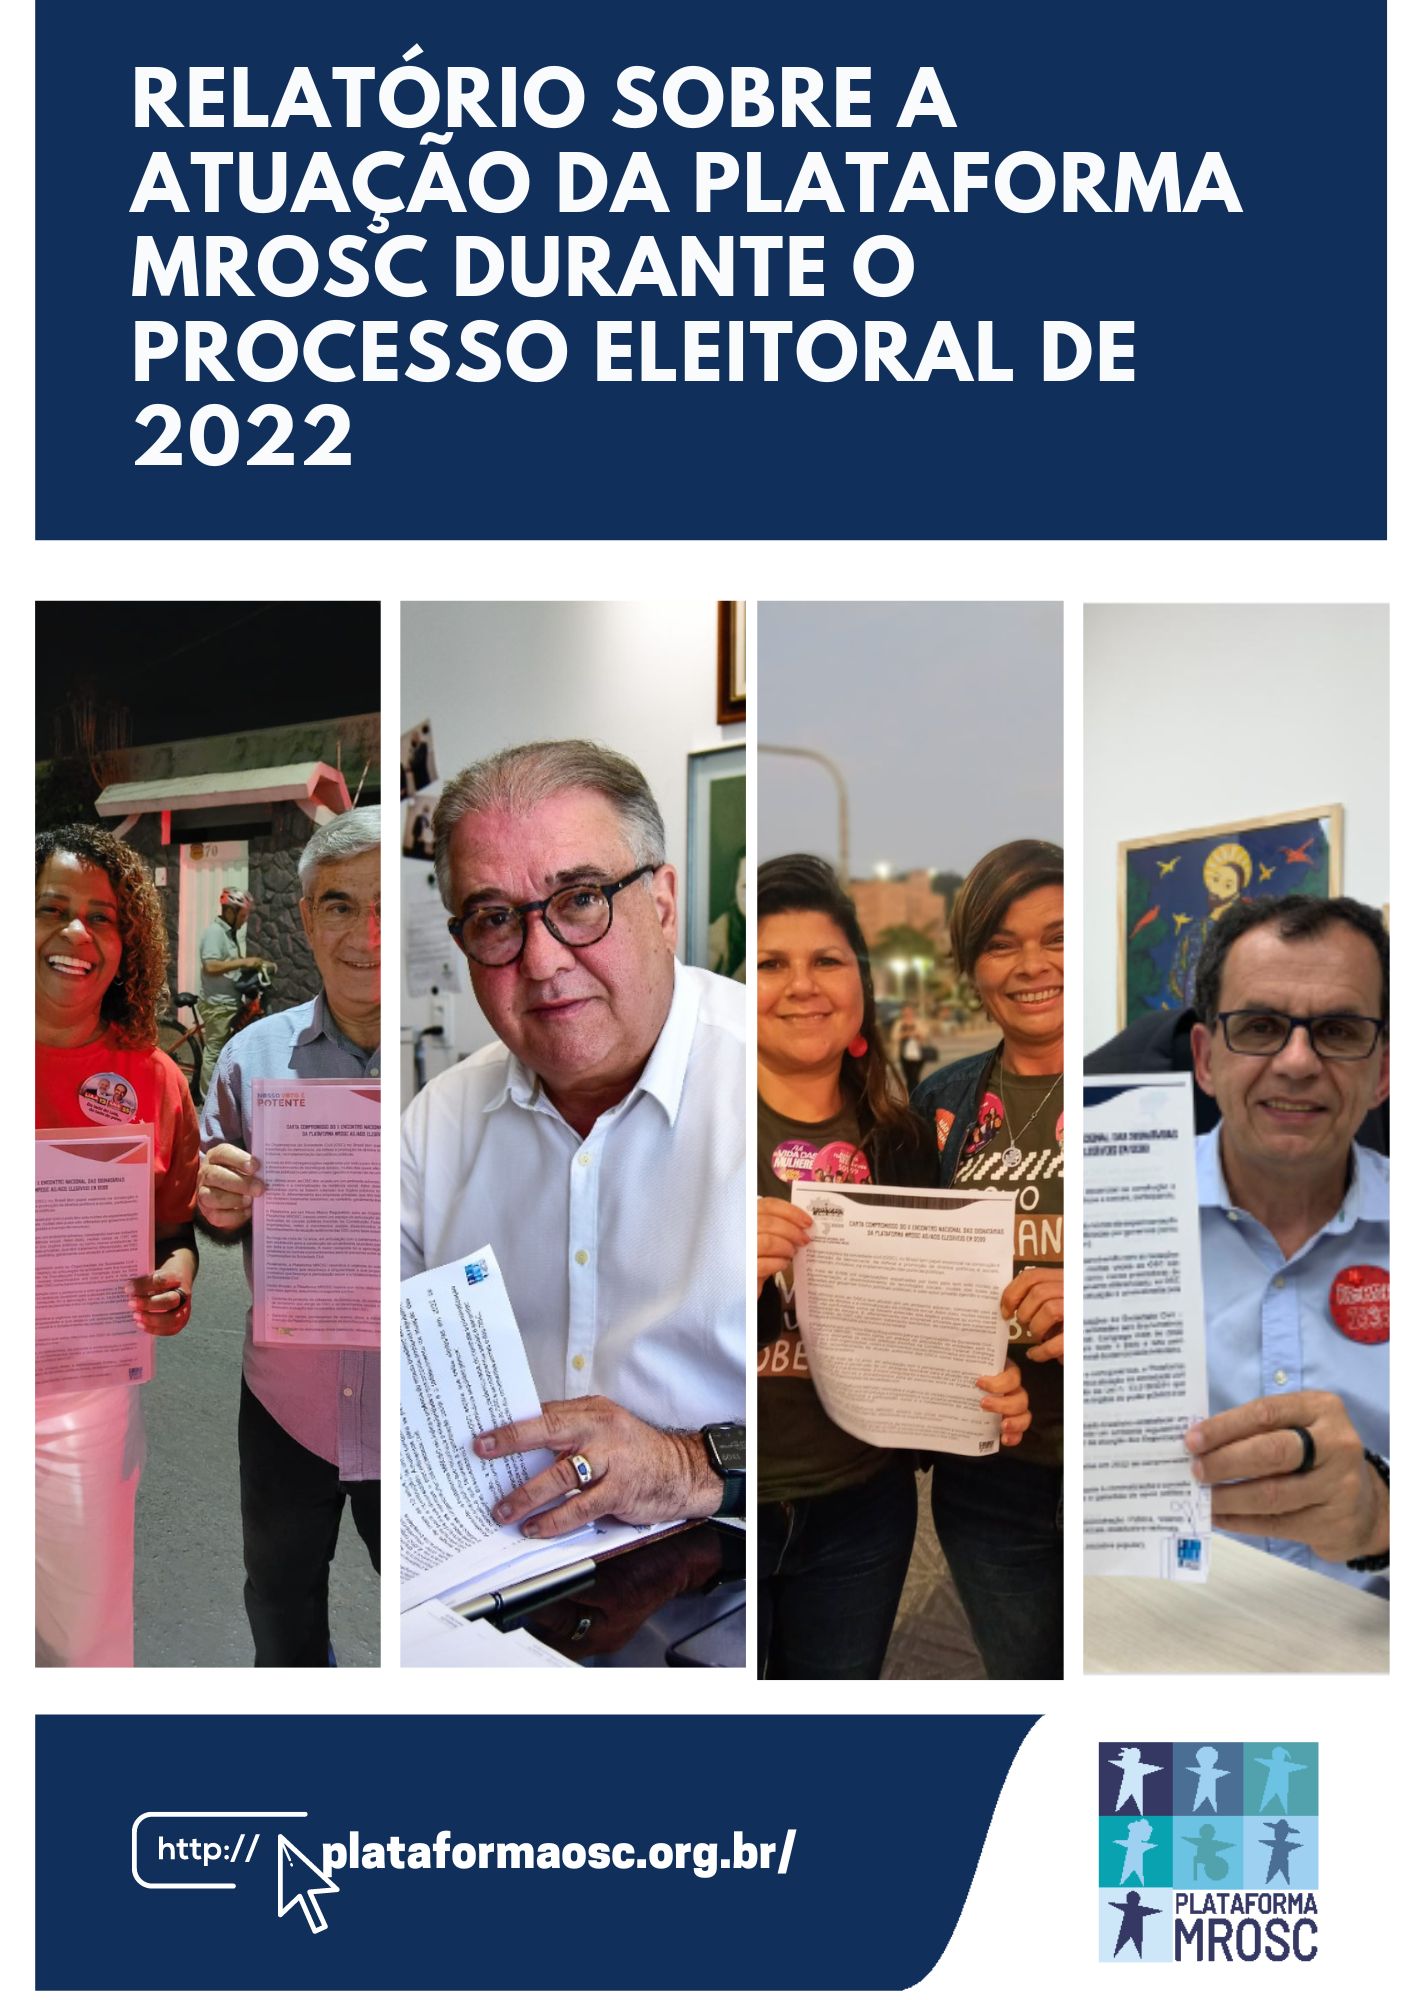 Relatório sobre a atuação da Plataforma MROSC durante o processo eleitoral de 2022